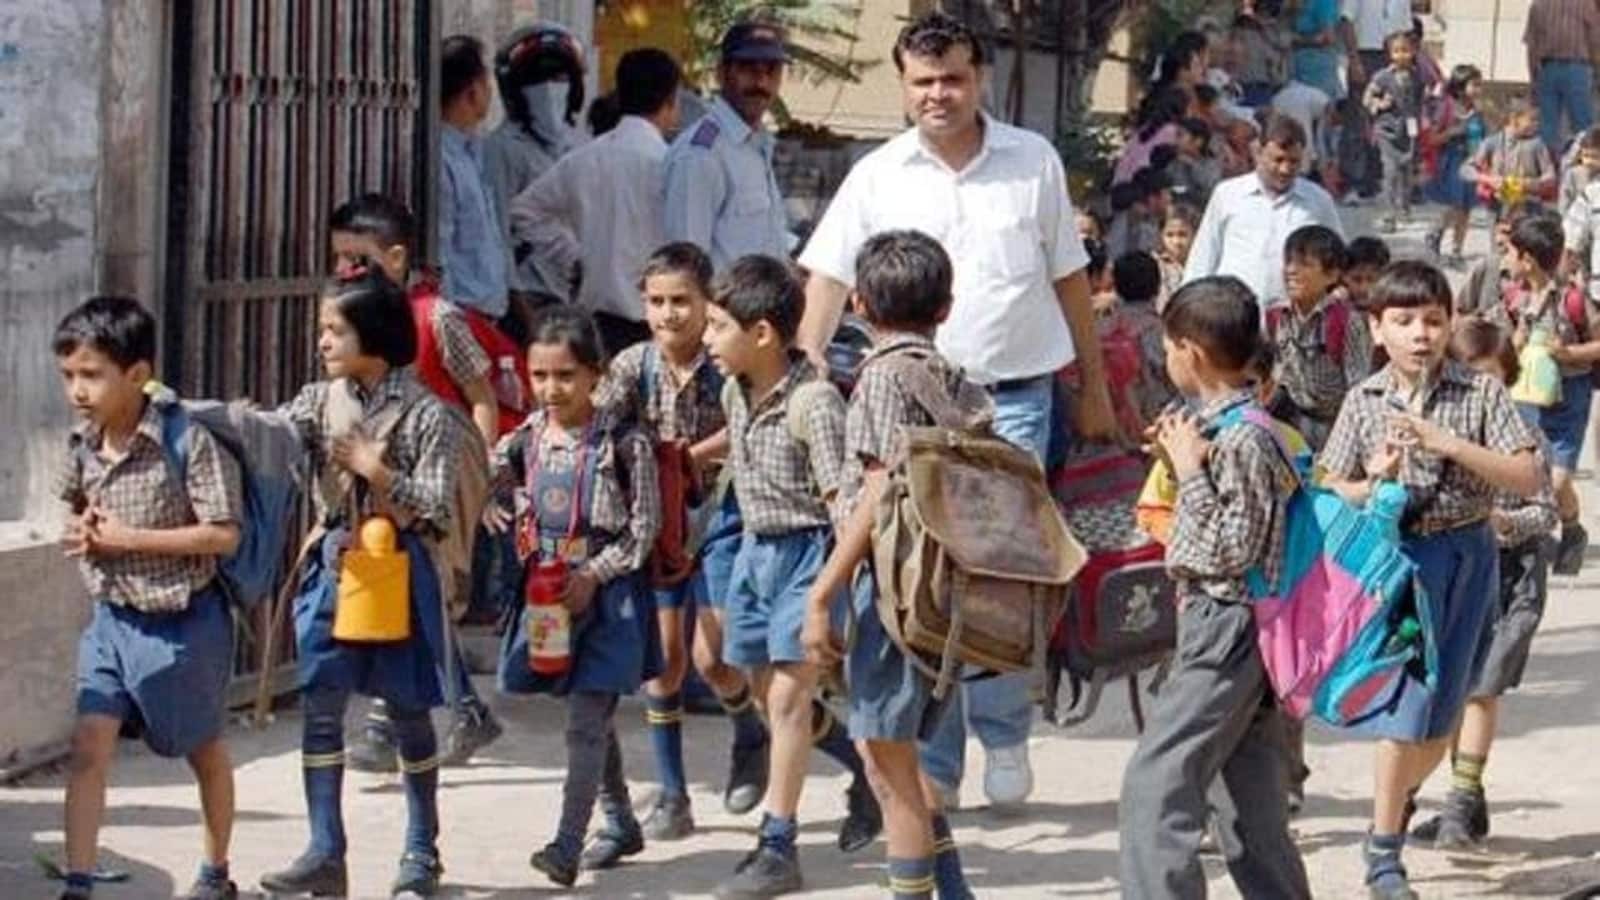 Haryana Schools Timings Changed: जानिए 1 जुलाई क्या होगी नई टाइमिंग? |